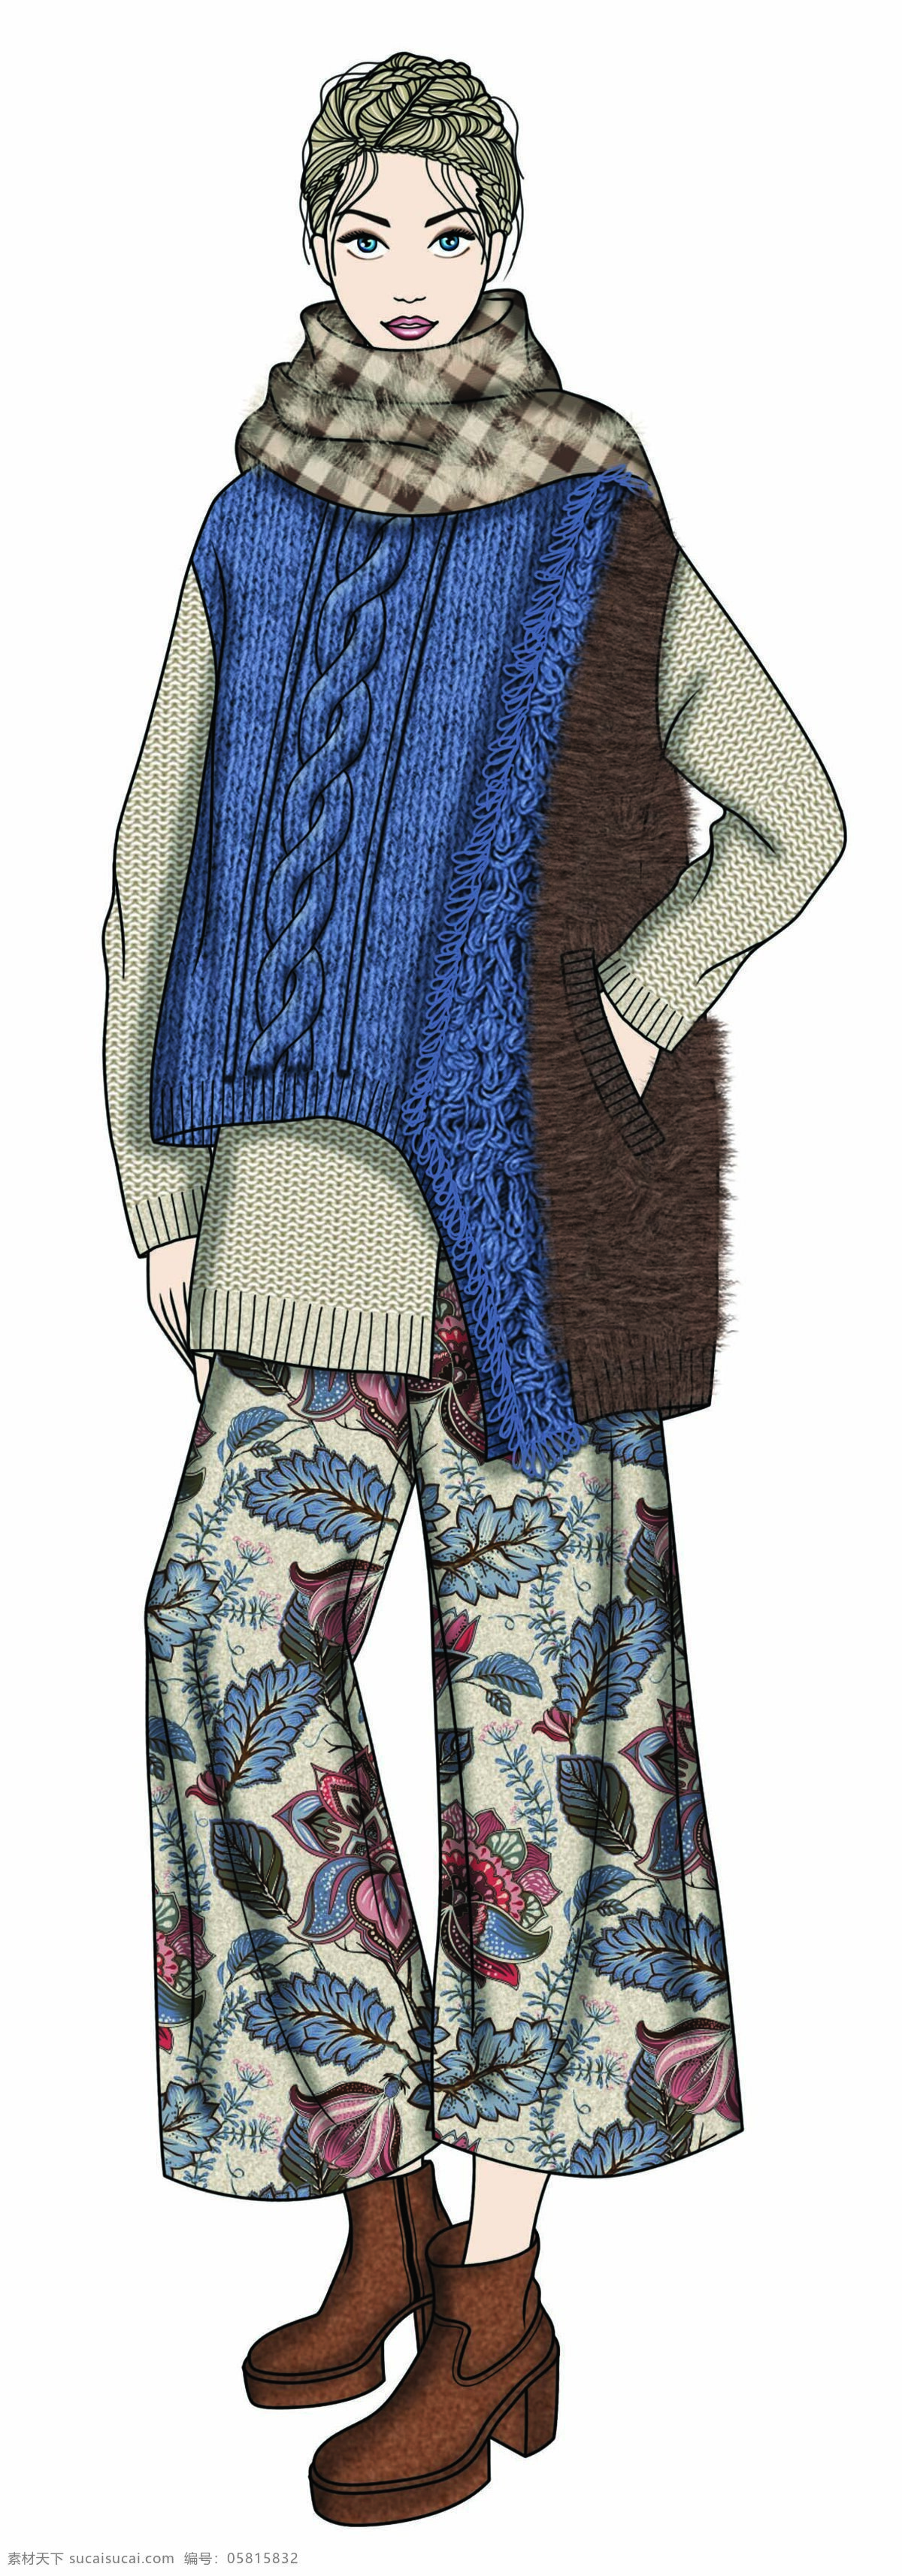 成熟 个性 风 蓝色 毛衣 女装 服装 效果图 服装效果图 格子围巾 裤子 蓝色毛衣 上衣